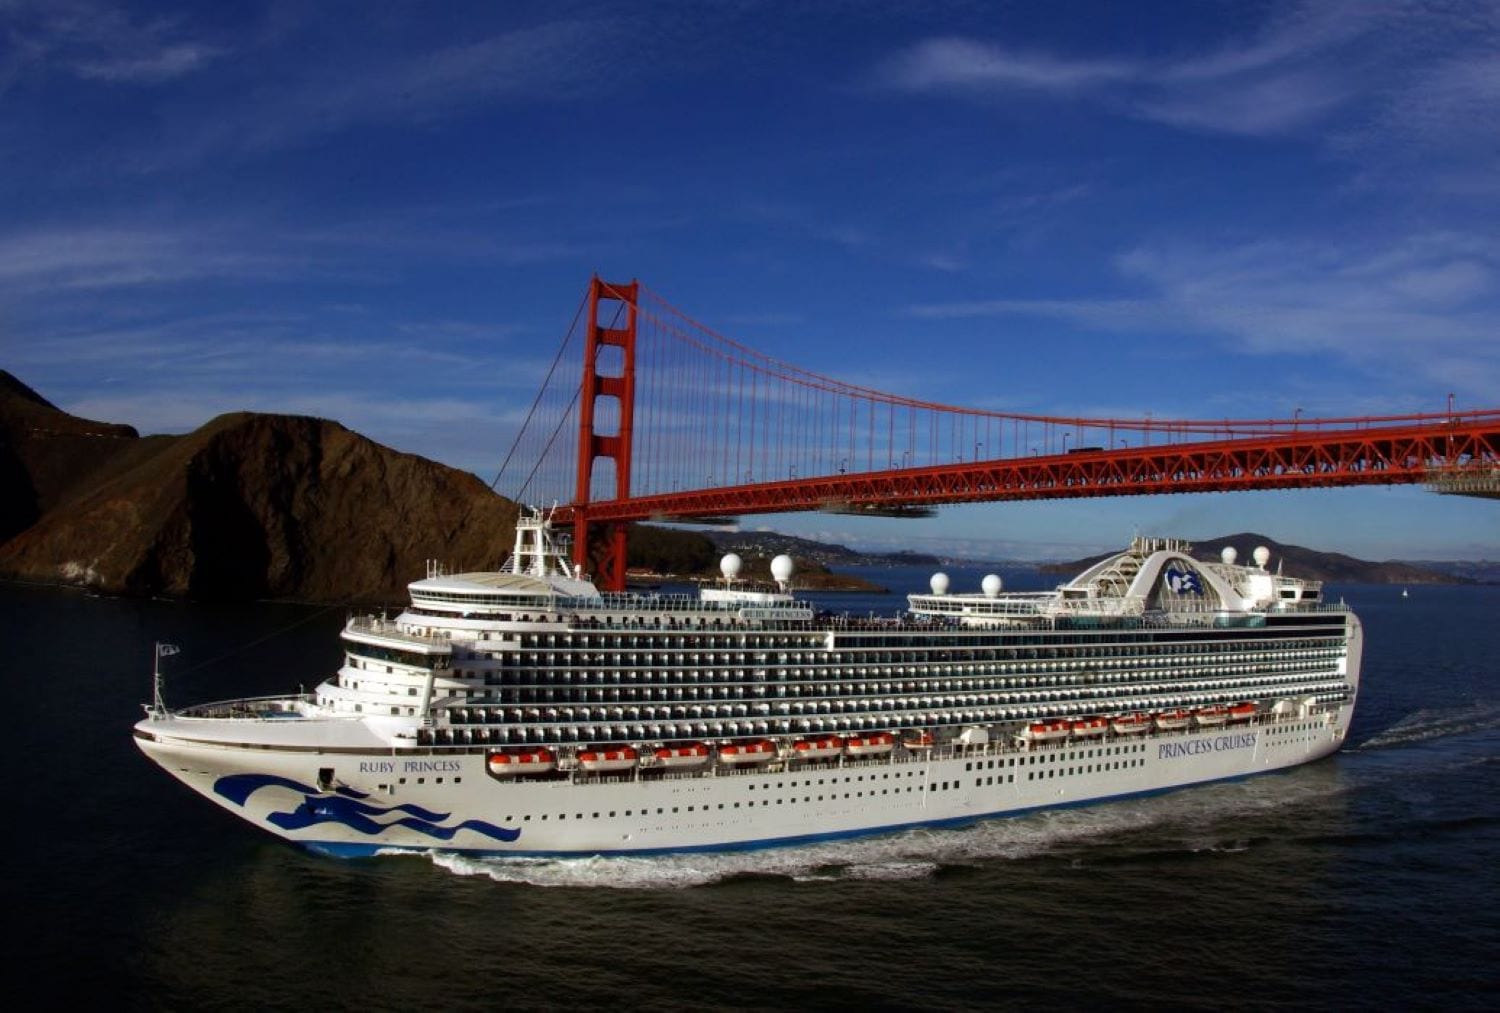 Hometown Cruise Ship Ruby Princess Debuts at Port of San Francisco for